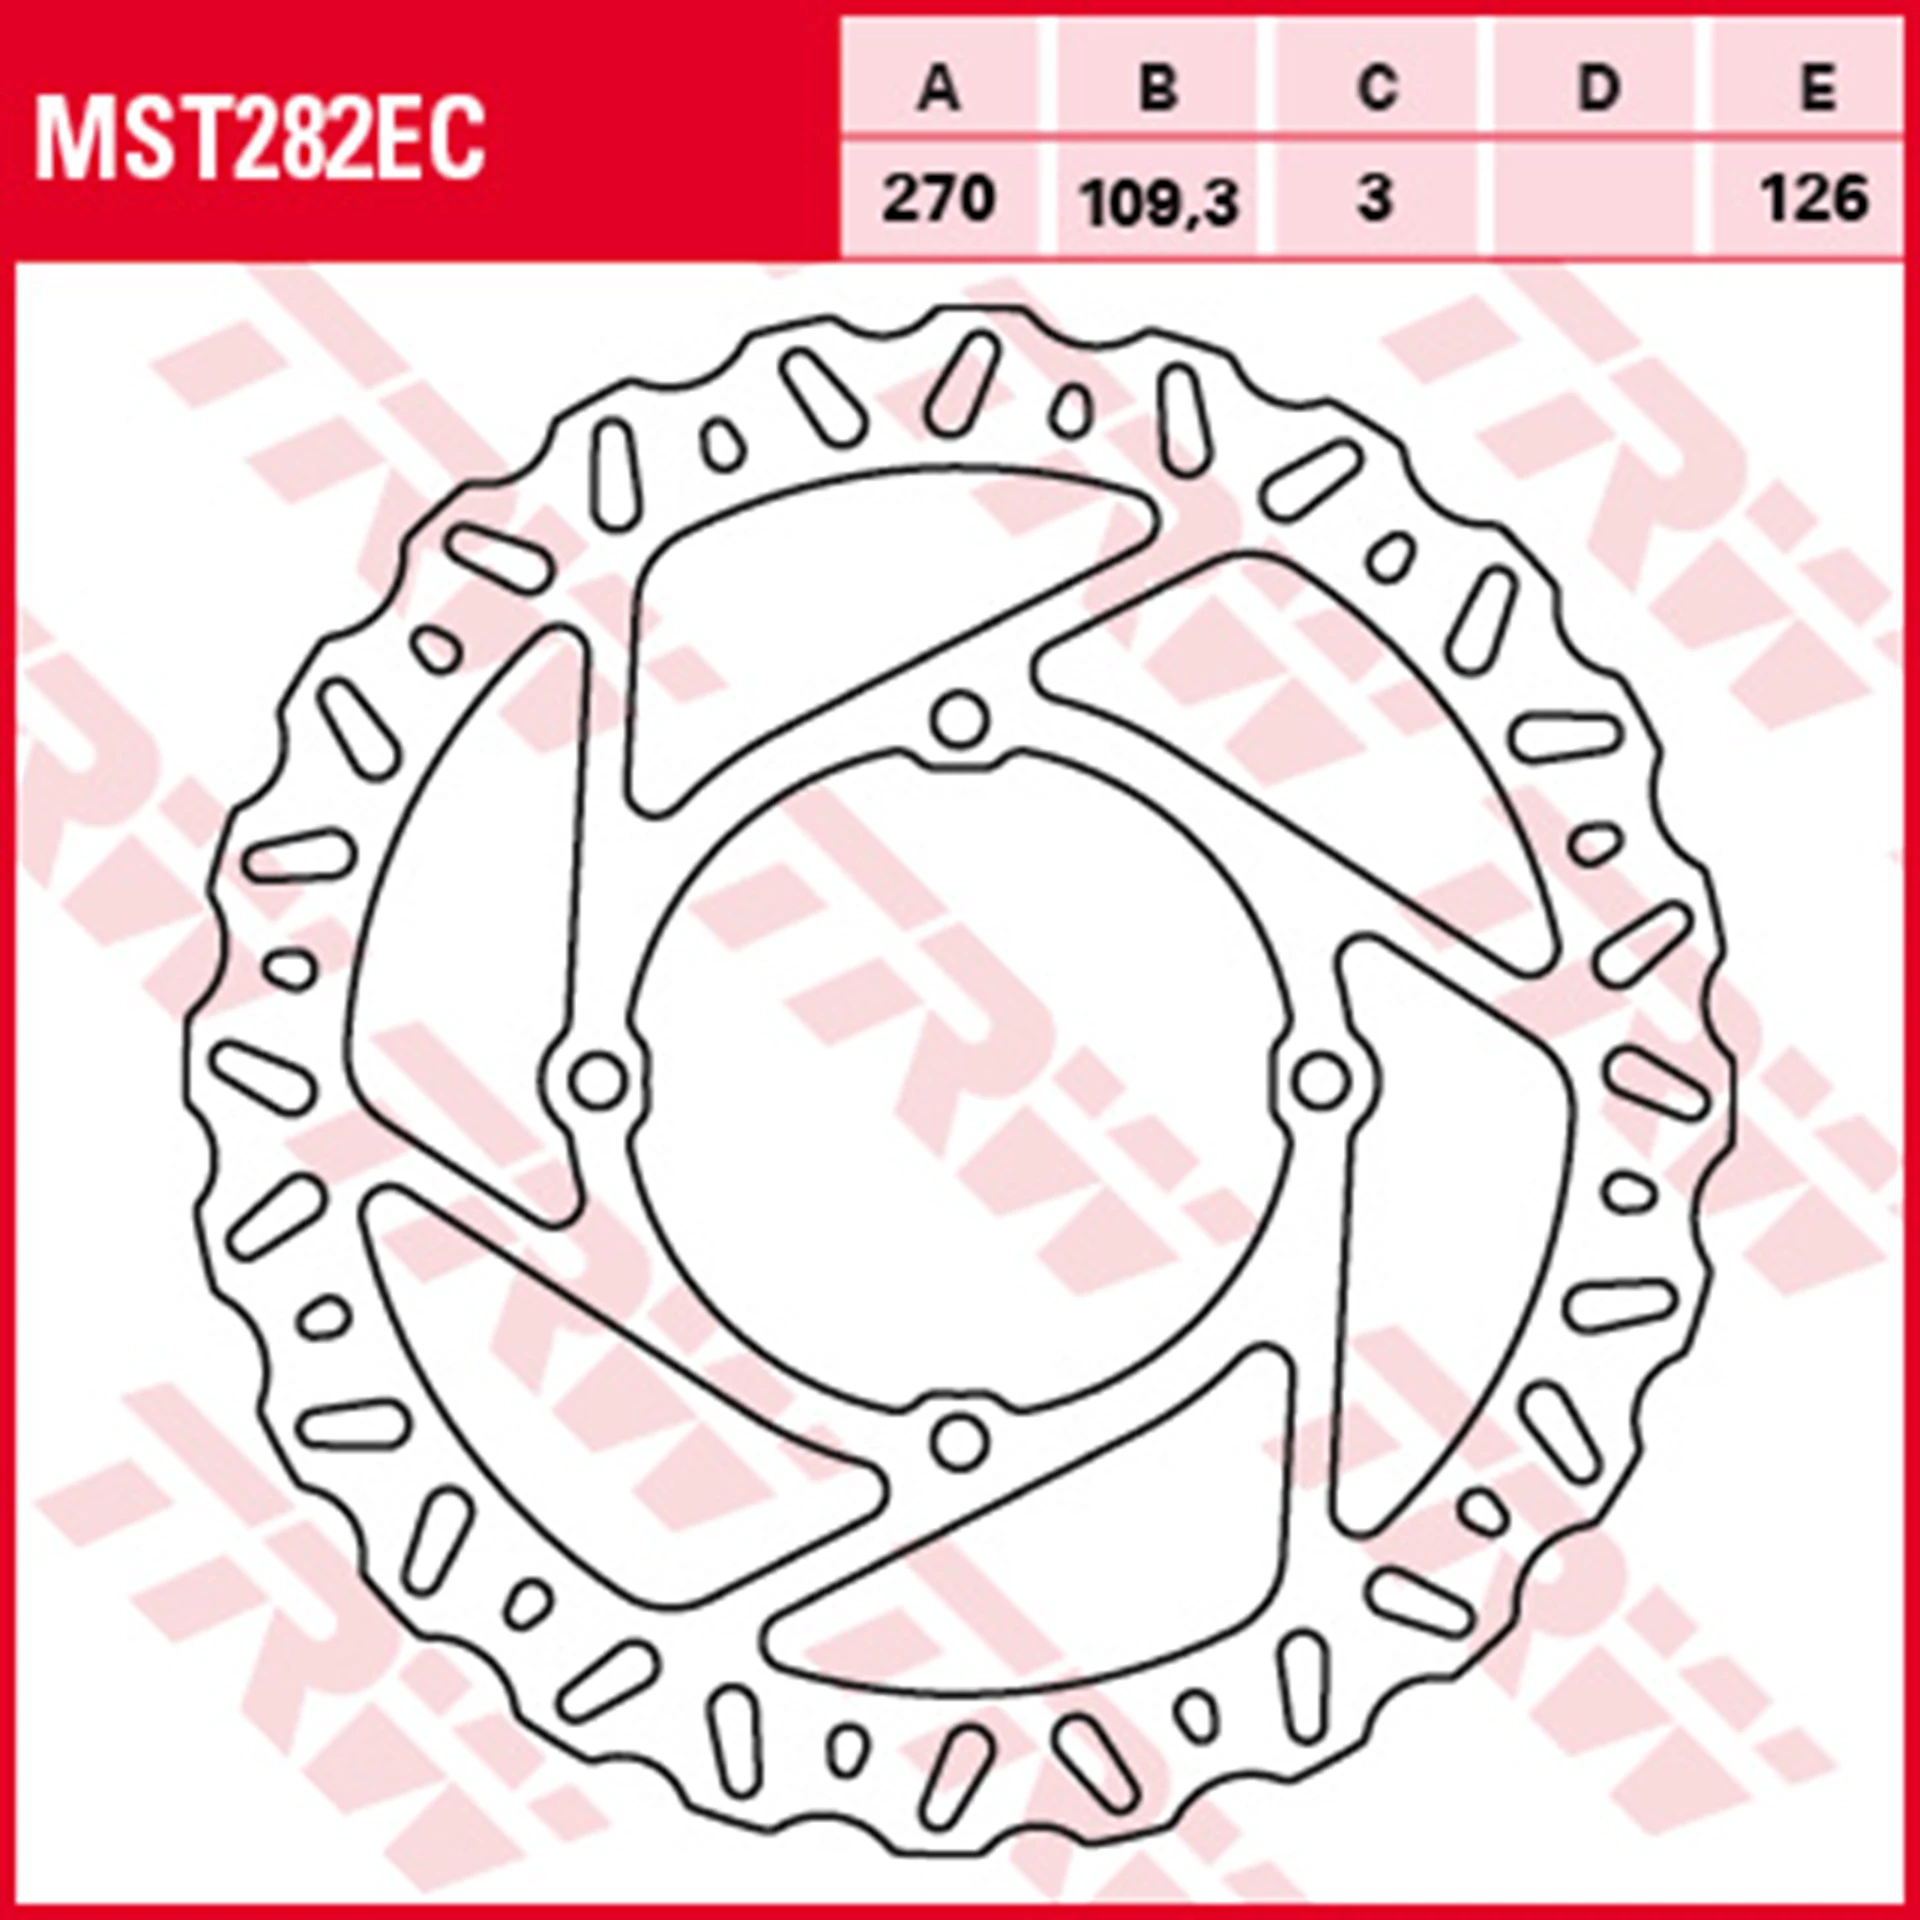 MST282EC.jpg